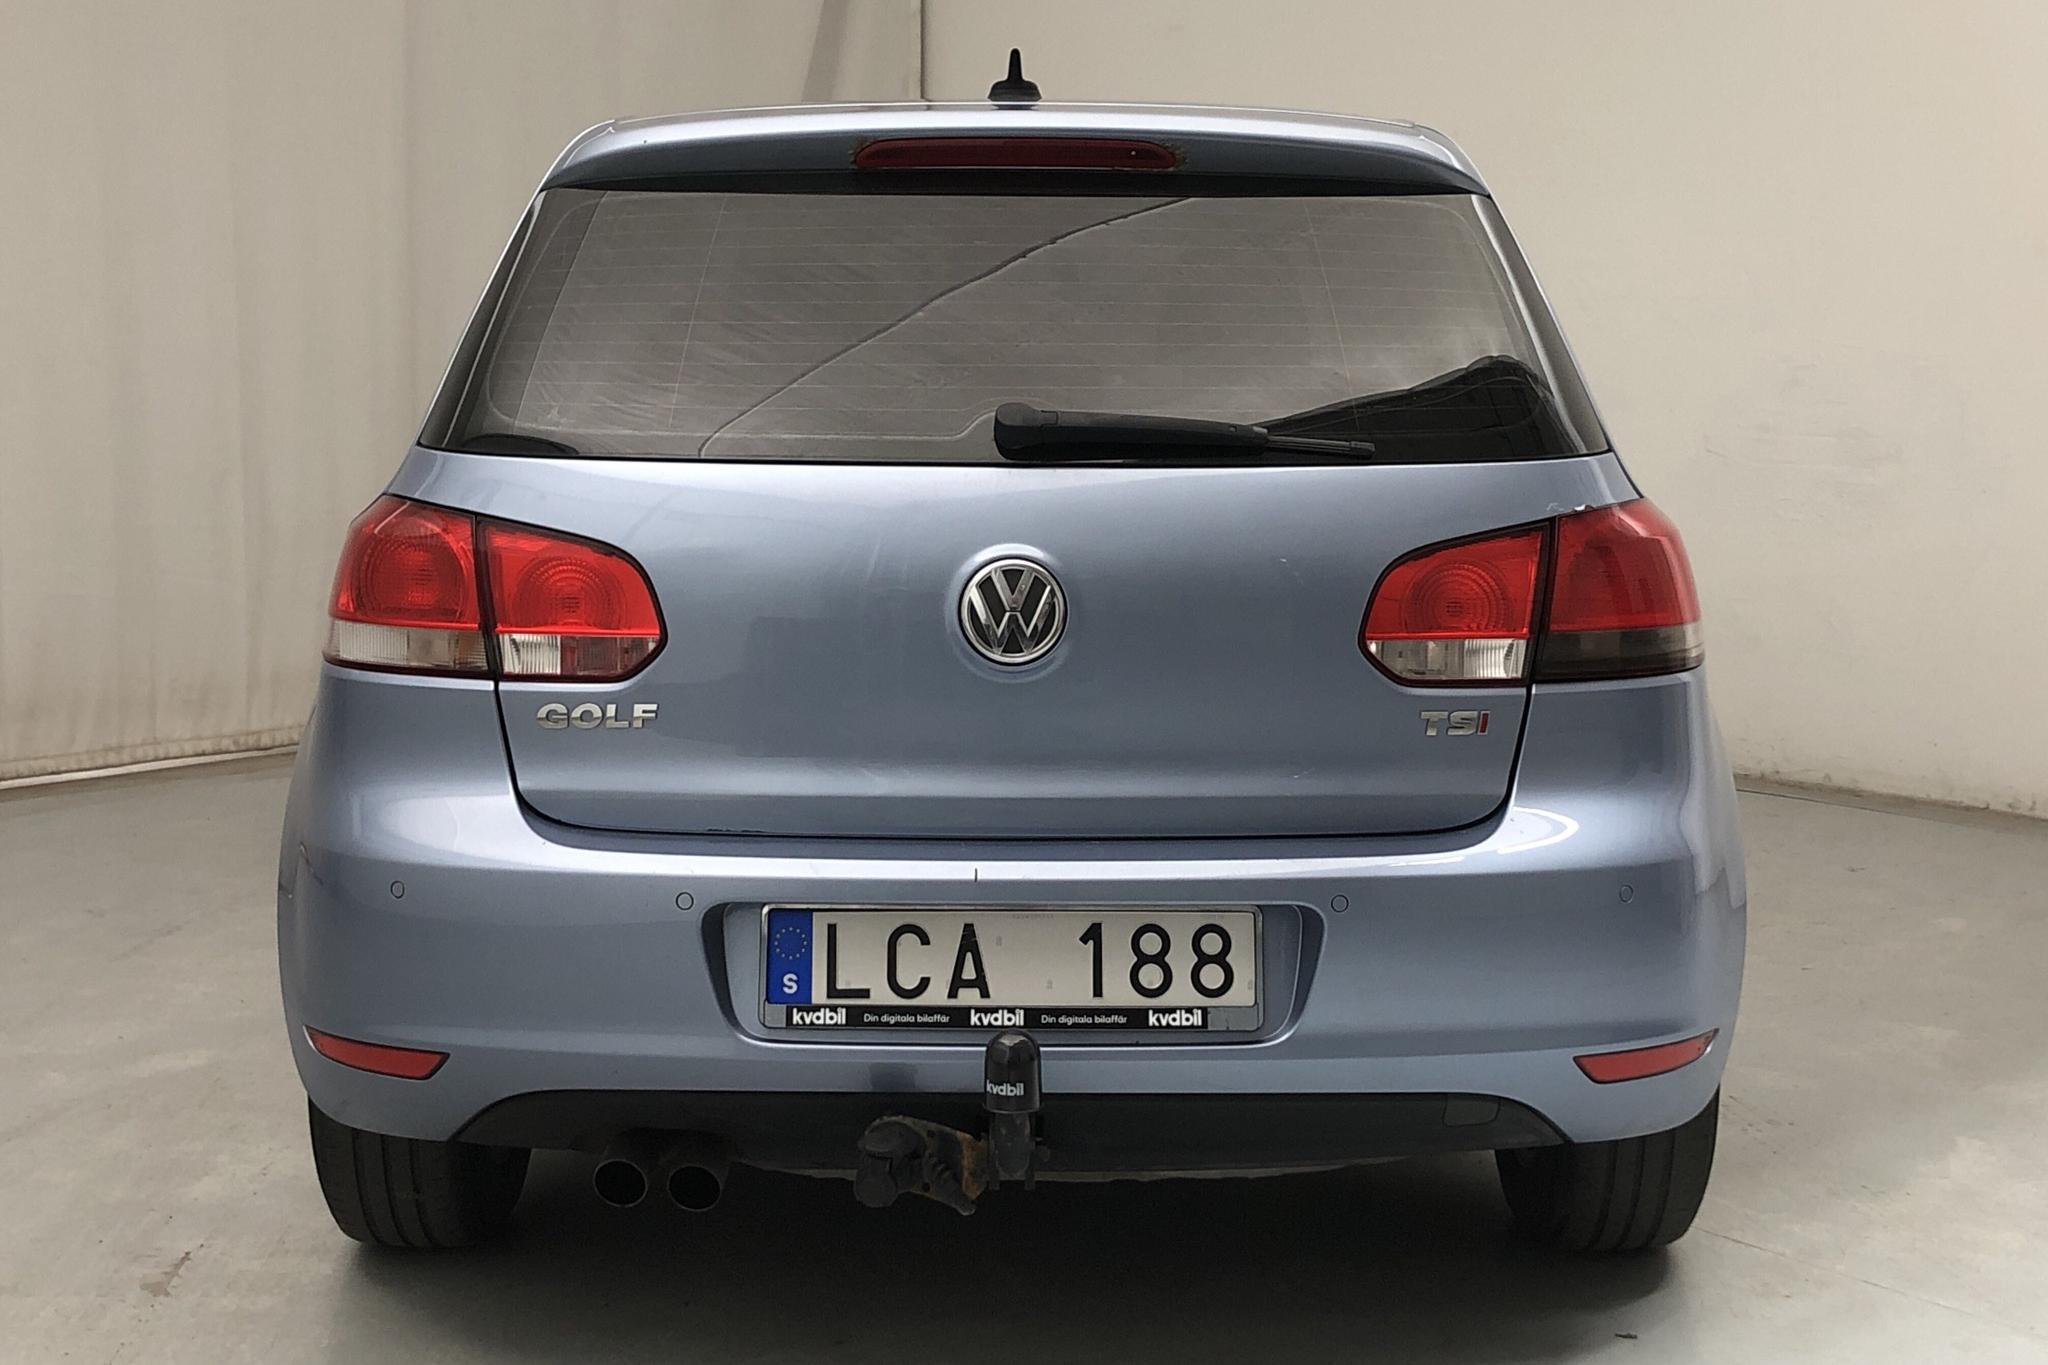 VW Golf VI 1.4 TSI 5dr (122hk) - 16 687 mil - Manuell - Light Blue - 2011